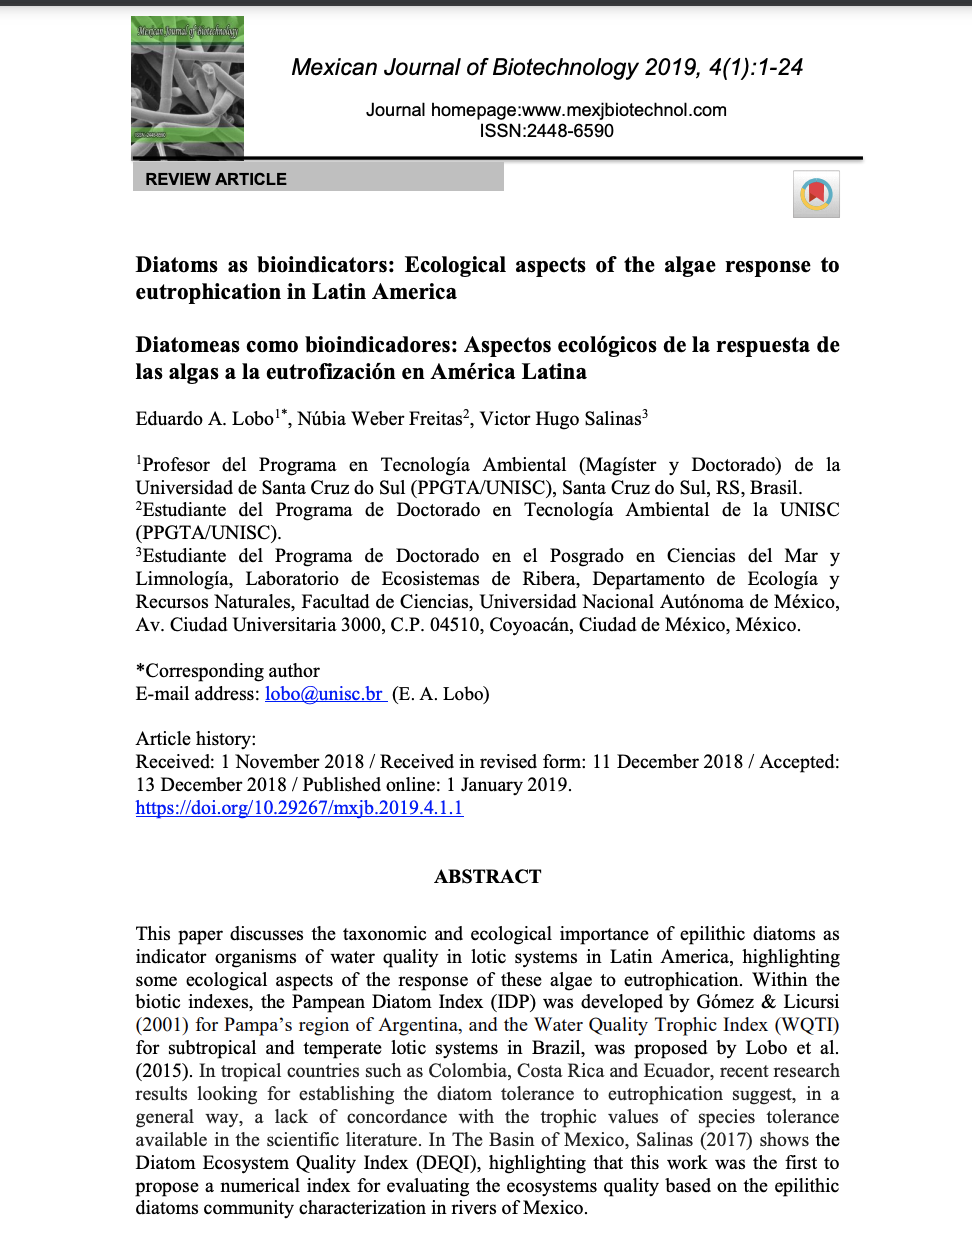 Diatomeas como bioindicadores: Aspectos ecológicos de la respuesta de las algas a la eutrofización en América Latina (Artículo)-Mexican Journal of Biotechnology